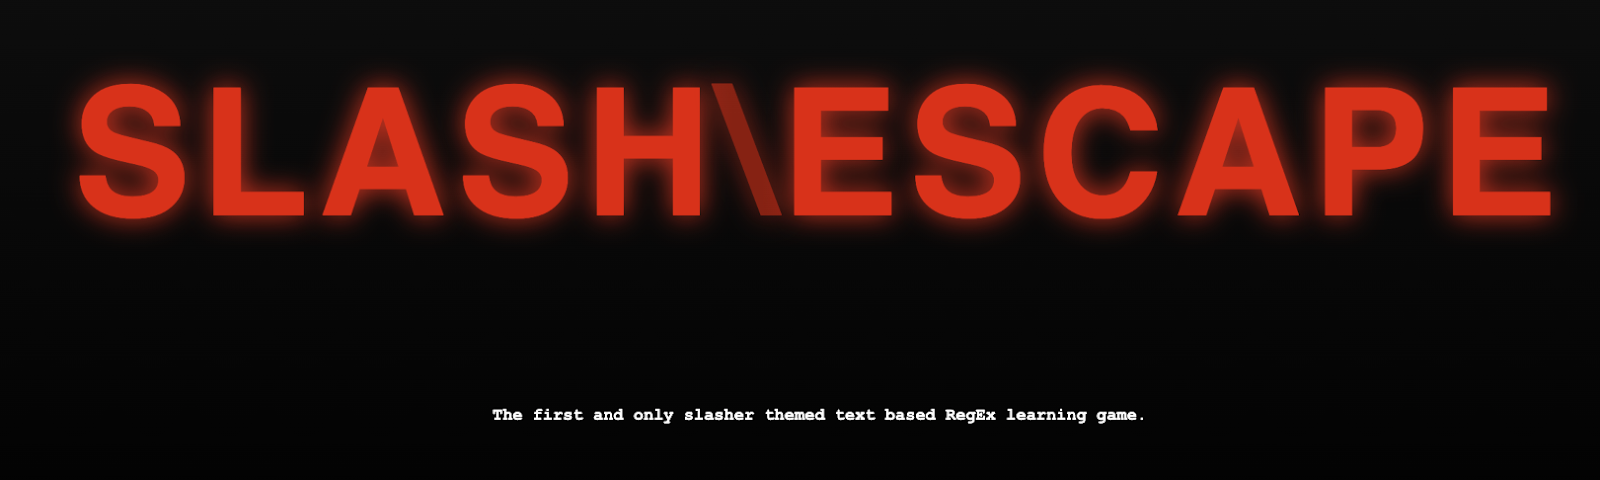 Ein Screenshot des Homepage Headers von Slash & Escape, dem RegEx Spiel. Zu sehen ist eine rot leuchtende Überschrift mit dem Text "Slash\Escape" und darunter ein Text "The first and only slasher themed text based RegEx learning game."